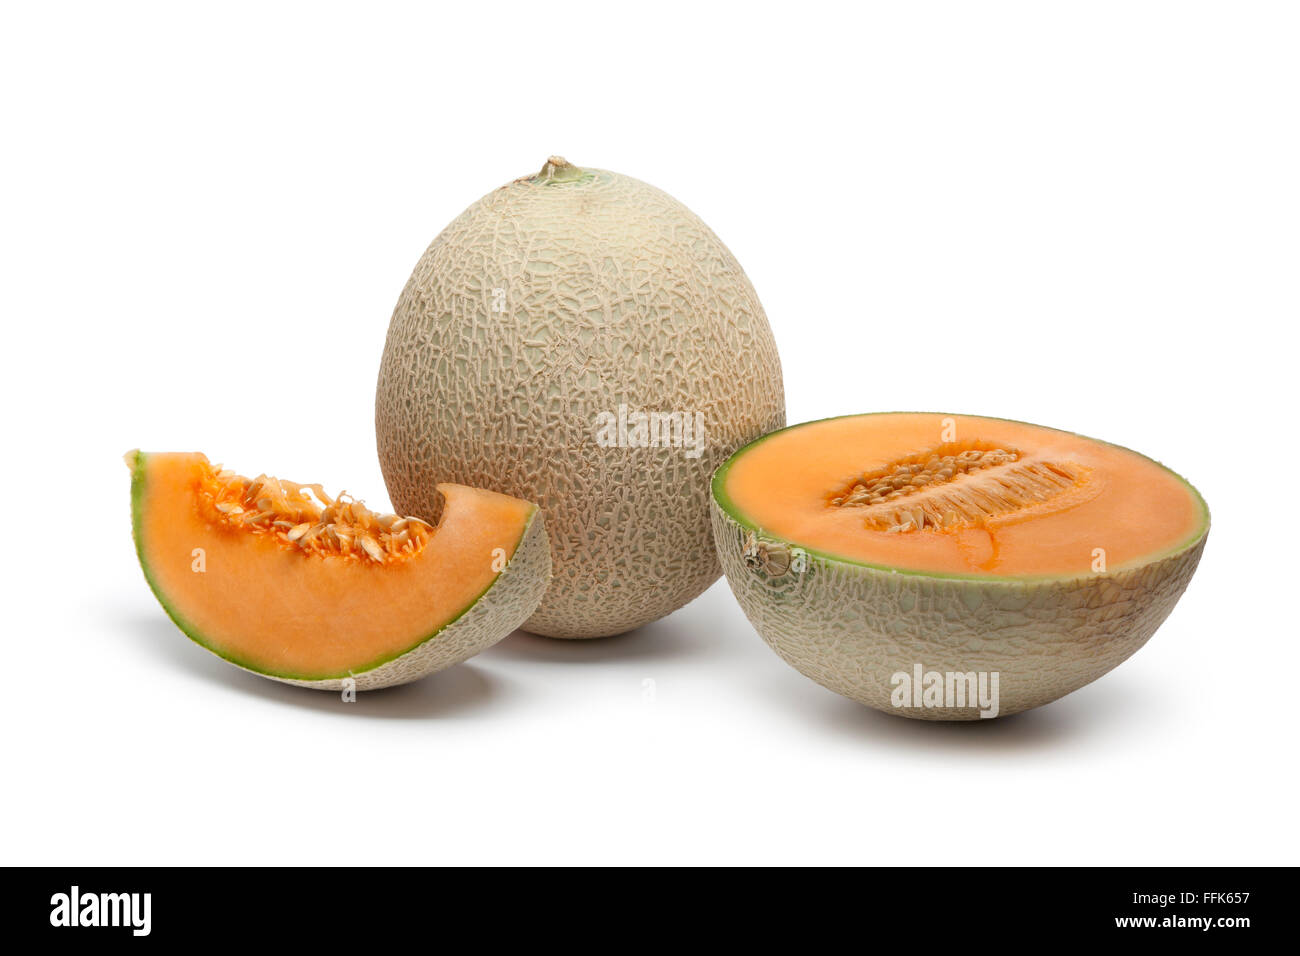 Intero e fette di melone Cantalupo isolati su sfondo bianco Foto Stock